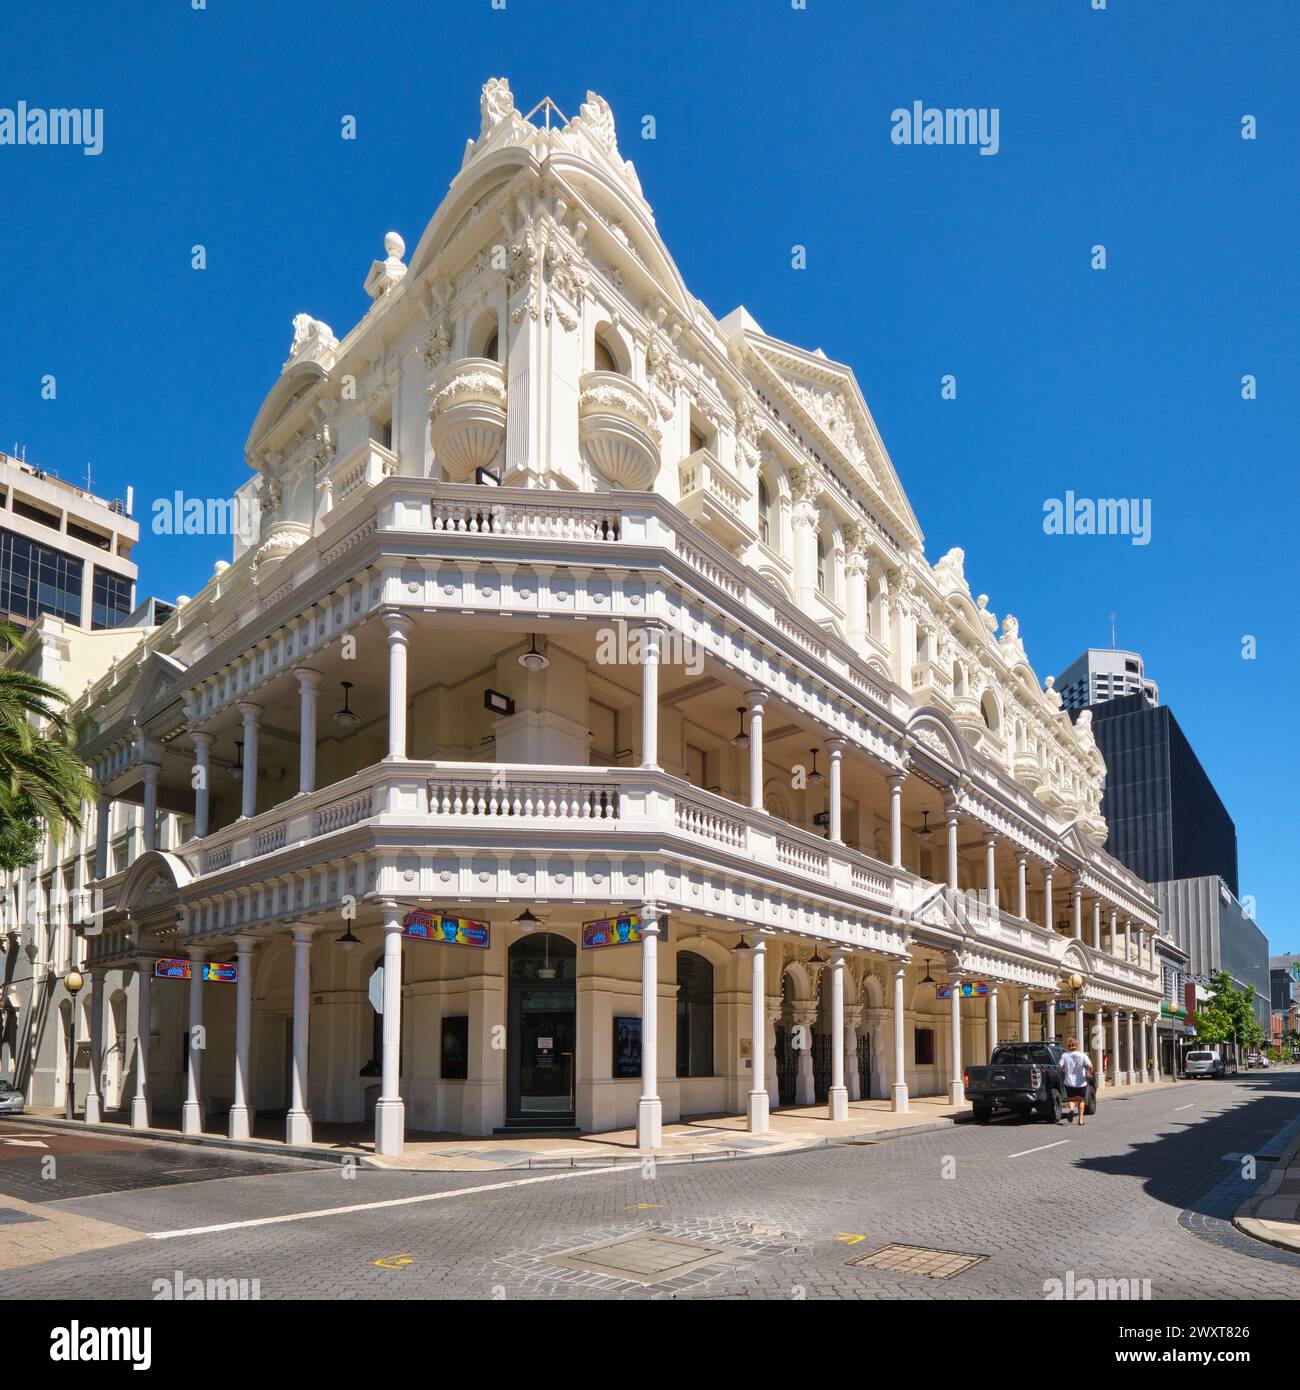 His Majesty's Theatre, ein barockes Theater aus Edwardian, das 1902-1904 in der Hay Street in Perth City, Western Australia, erbaut wurde. Stockfoto